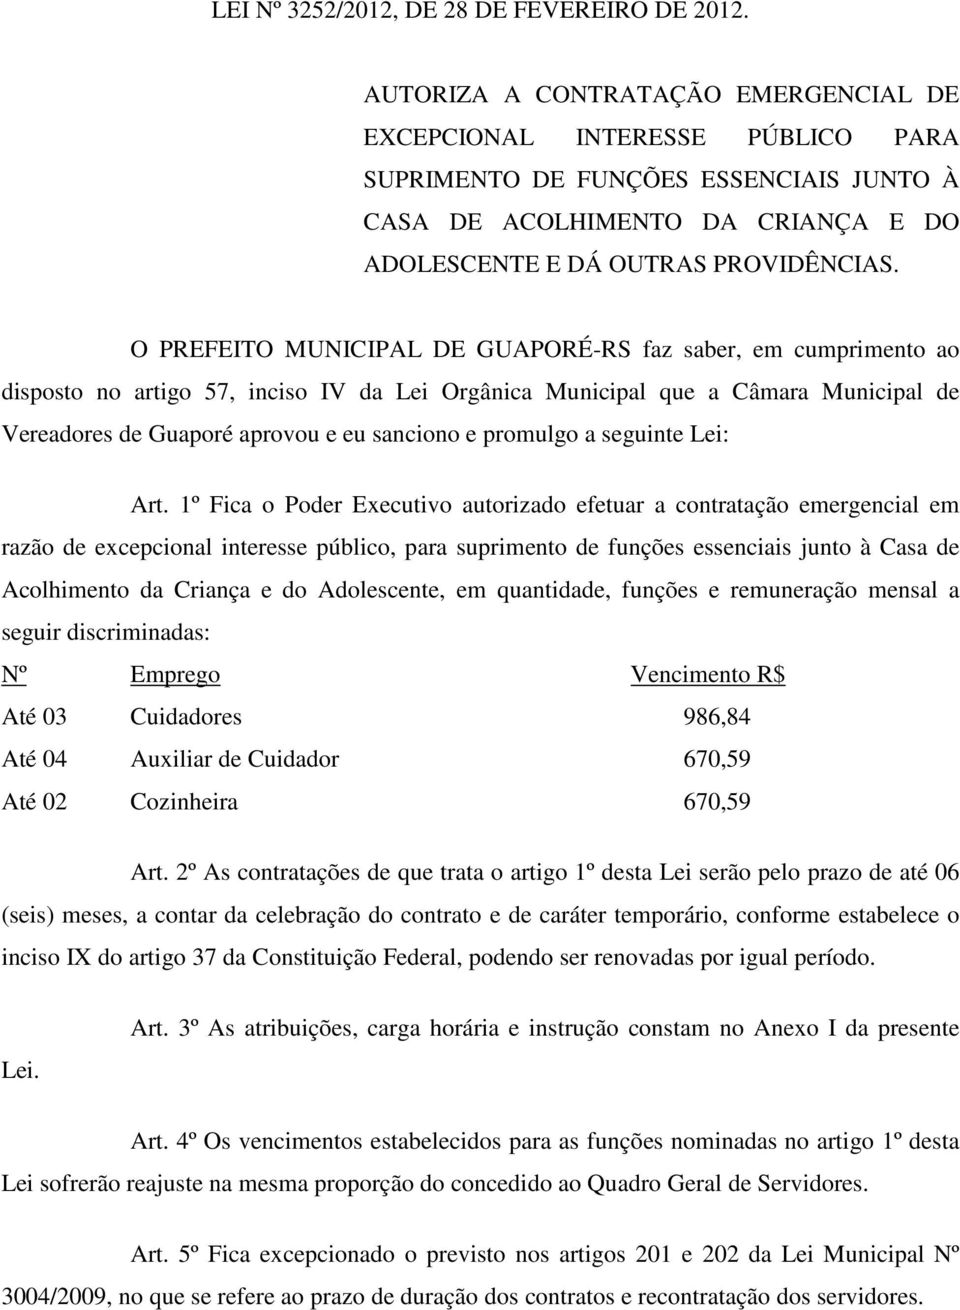 O PREFEITO MUNICIPAL DE GUAPORÉ-RS faz saber, em cumprimento ao disposto no artigo 57, inciso IV da Lei Orgânica Municipal que a Câmara Municipal de Vereadores de Guaporé aprovou e eu sanciono e